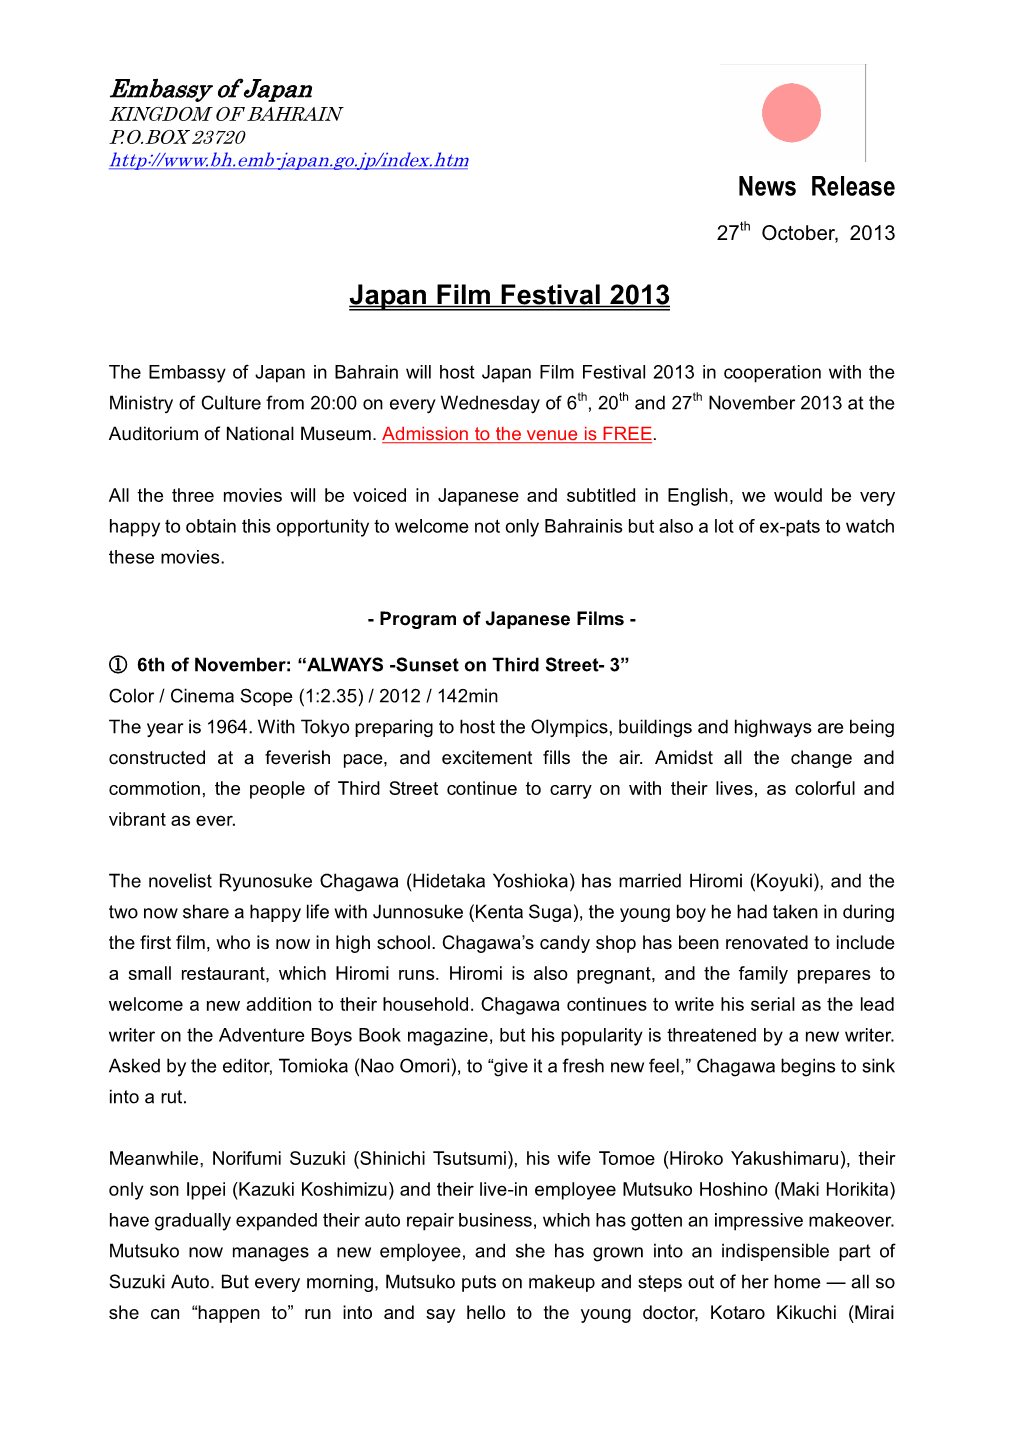 News Release Japan Film Festival 2013